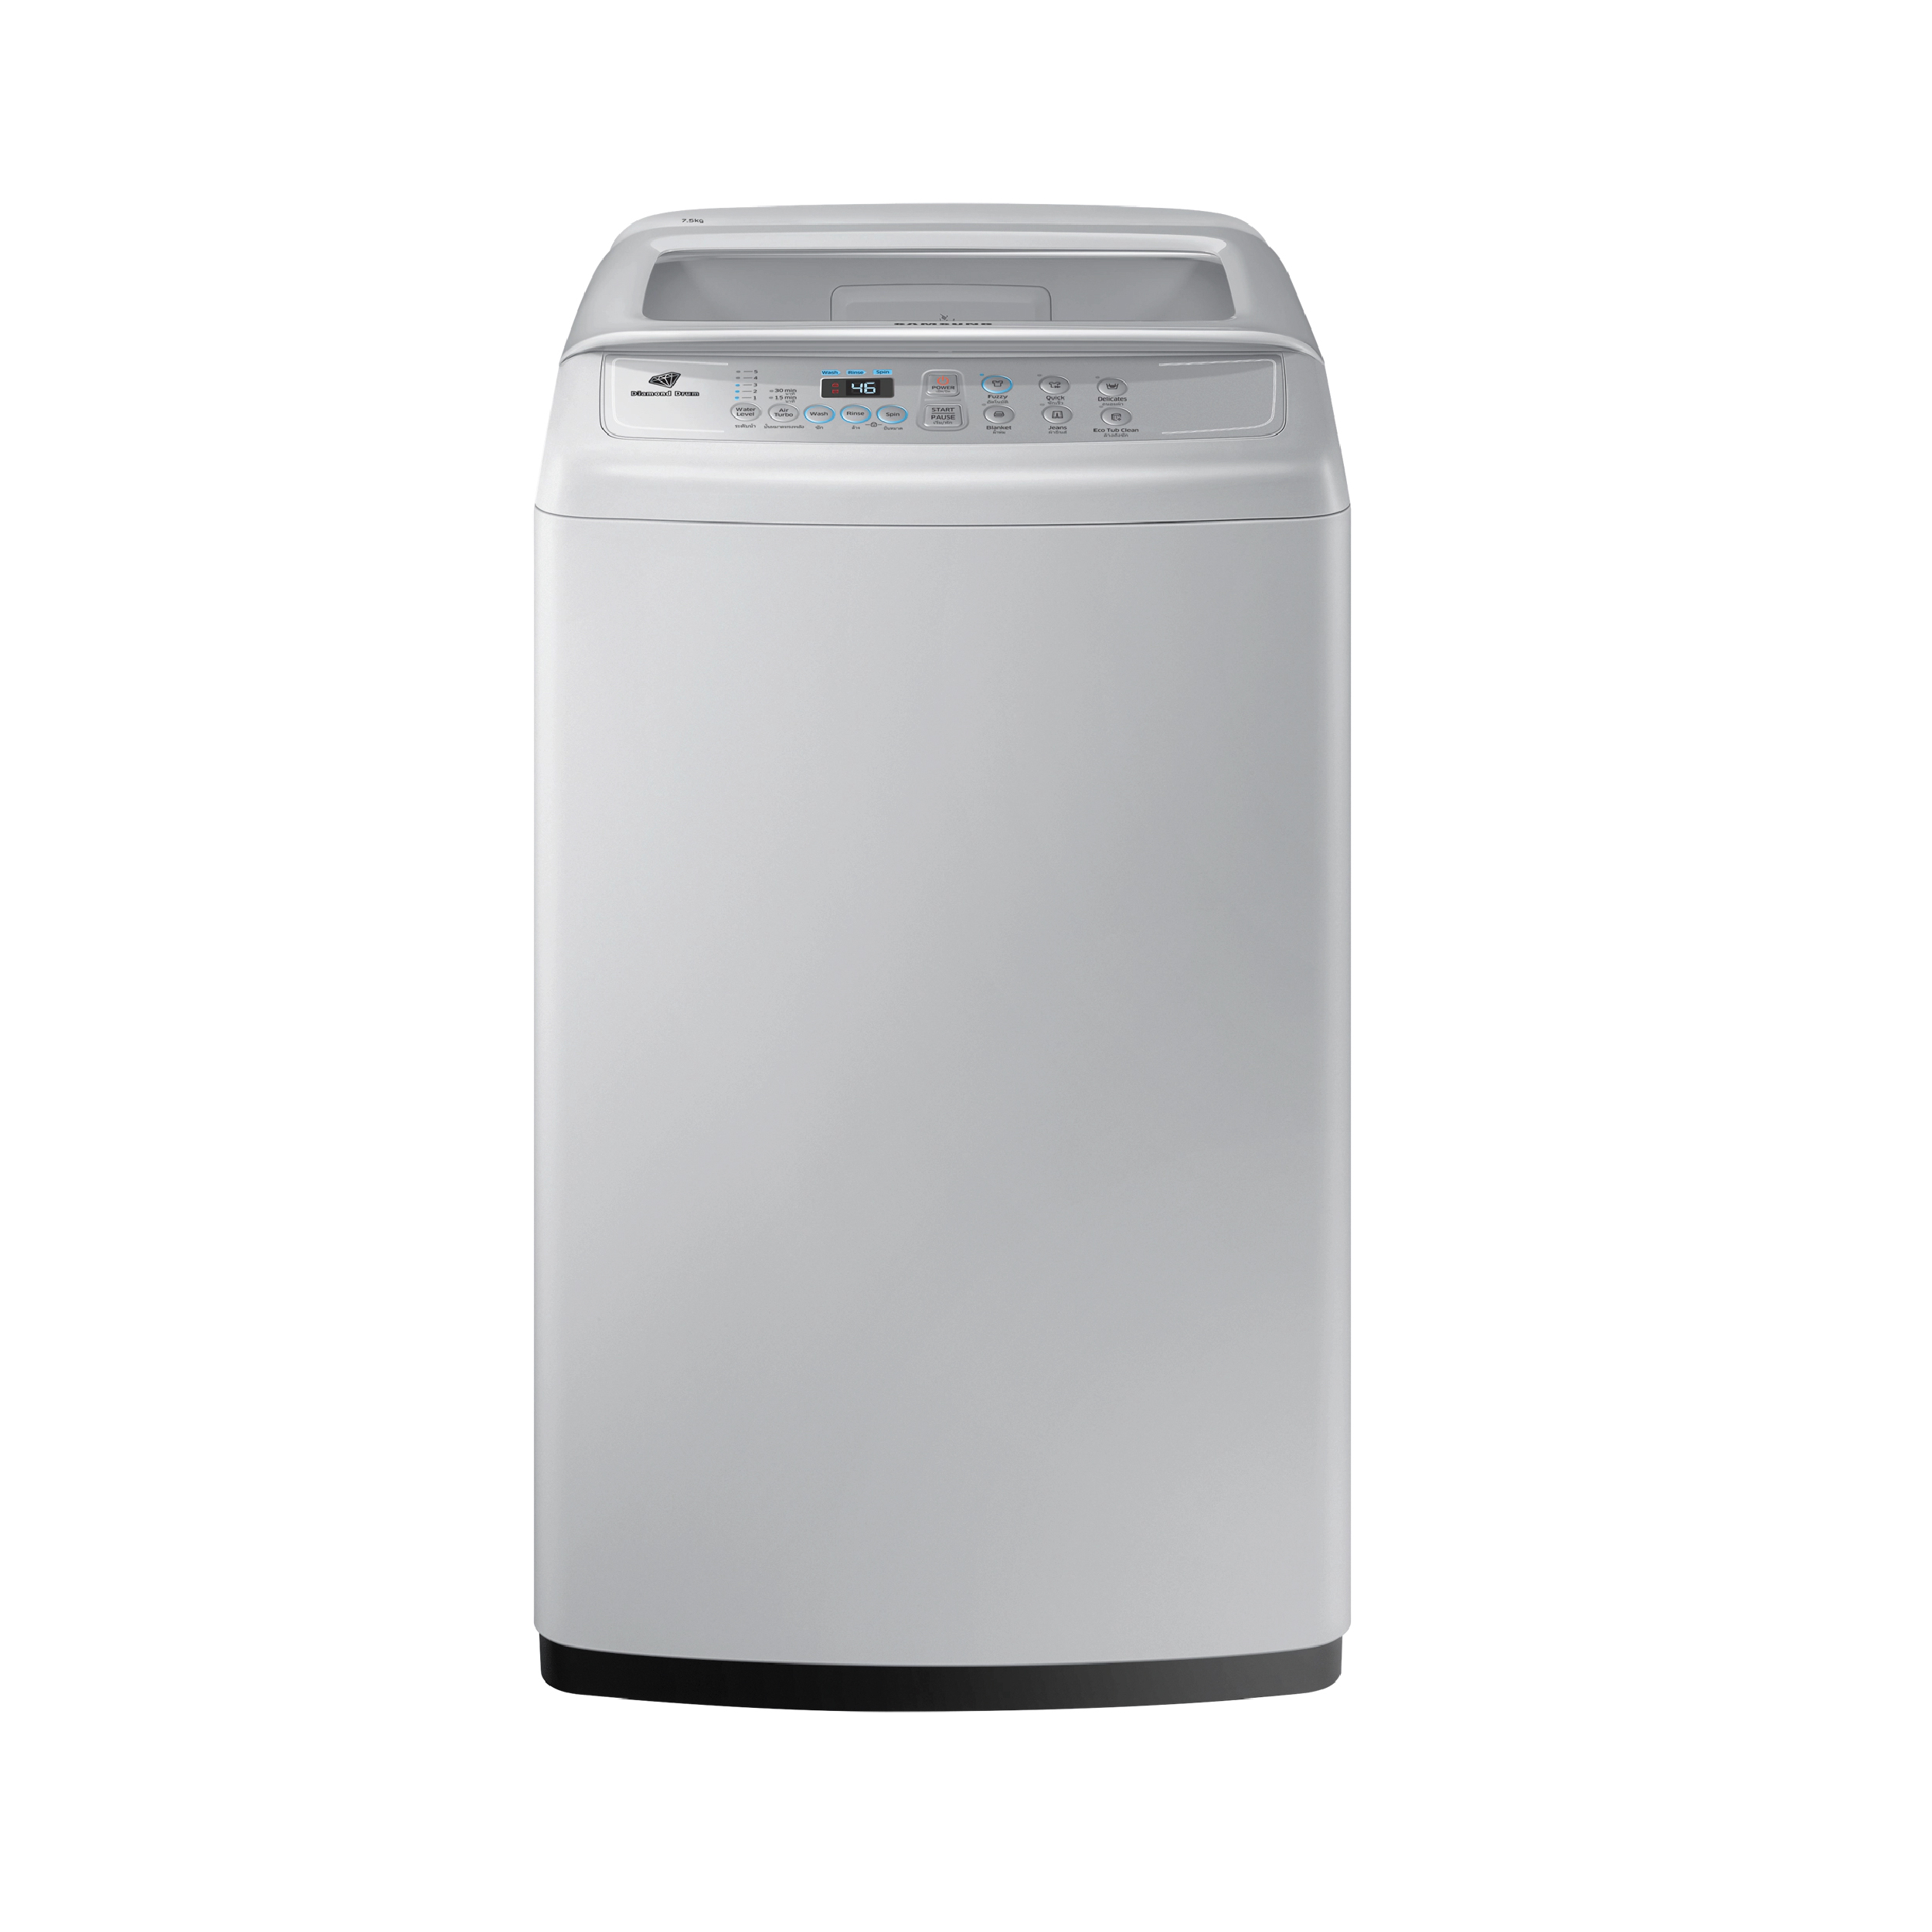 เครื่องซักผ้ายี่ห้อไหนดีรุ่นฮิตที่มีเทคโนโลยี Wobble จาก Samsung รุ่น WA75H4000SG/ST